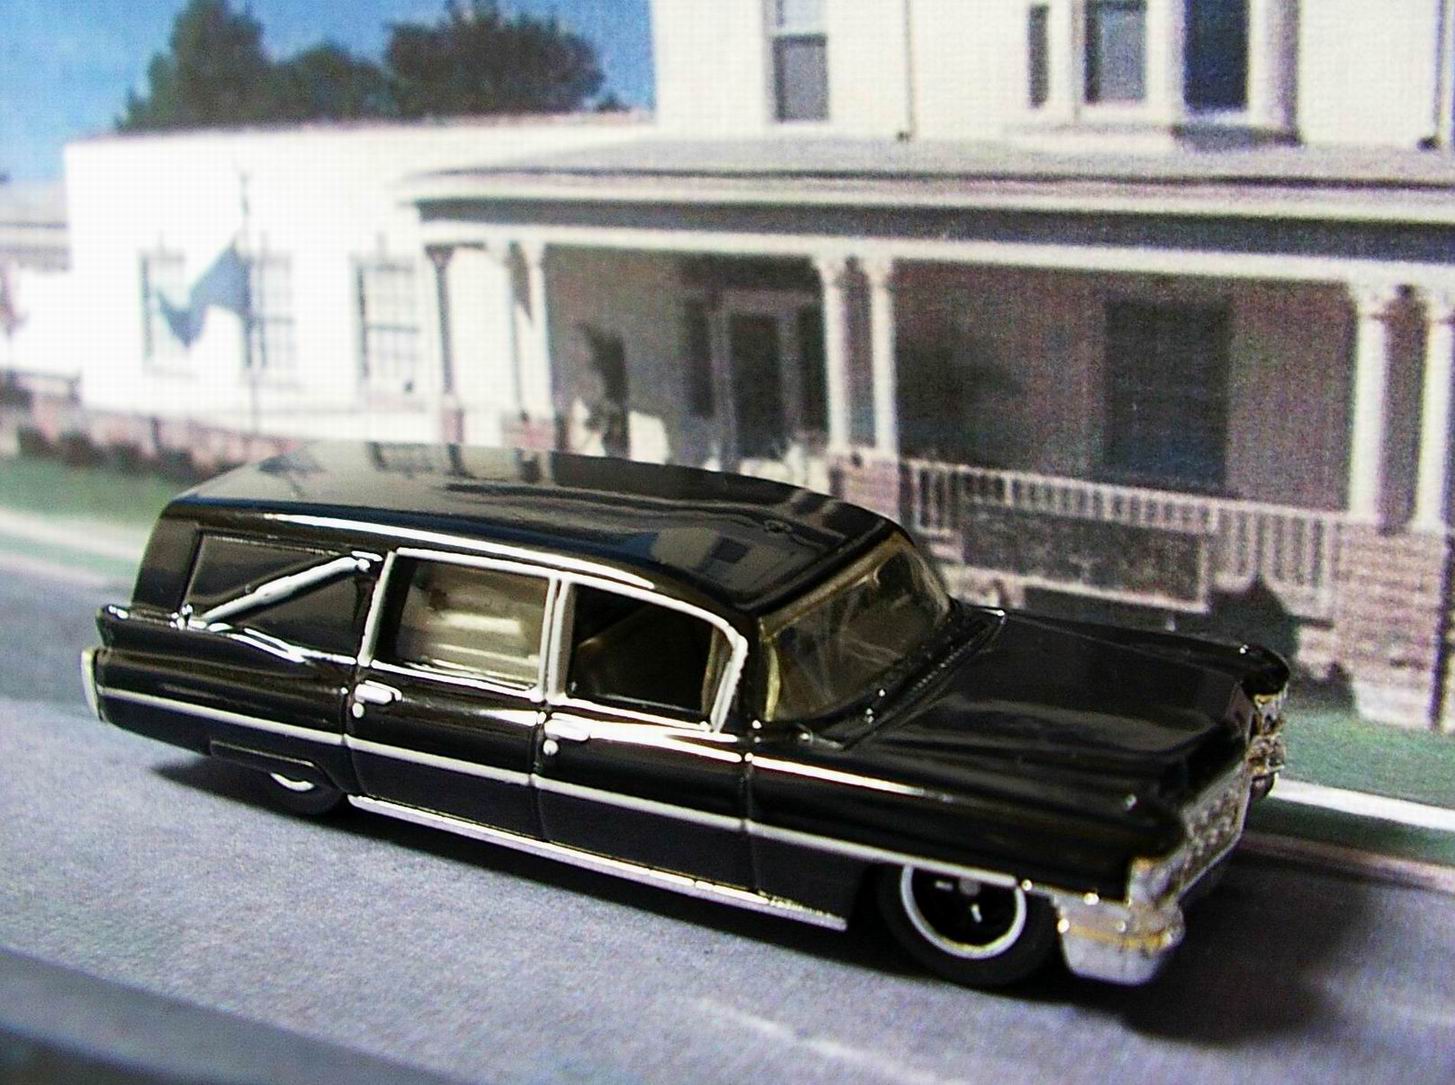 1963 cadillac hearse matchbox cars wiki fandom 1963 cadillac hearse matchbox cars